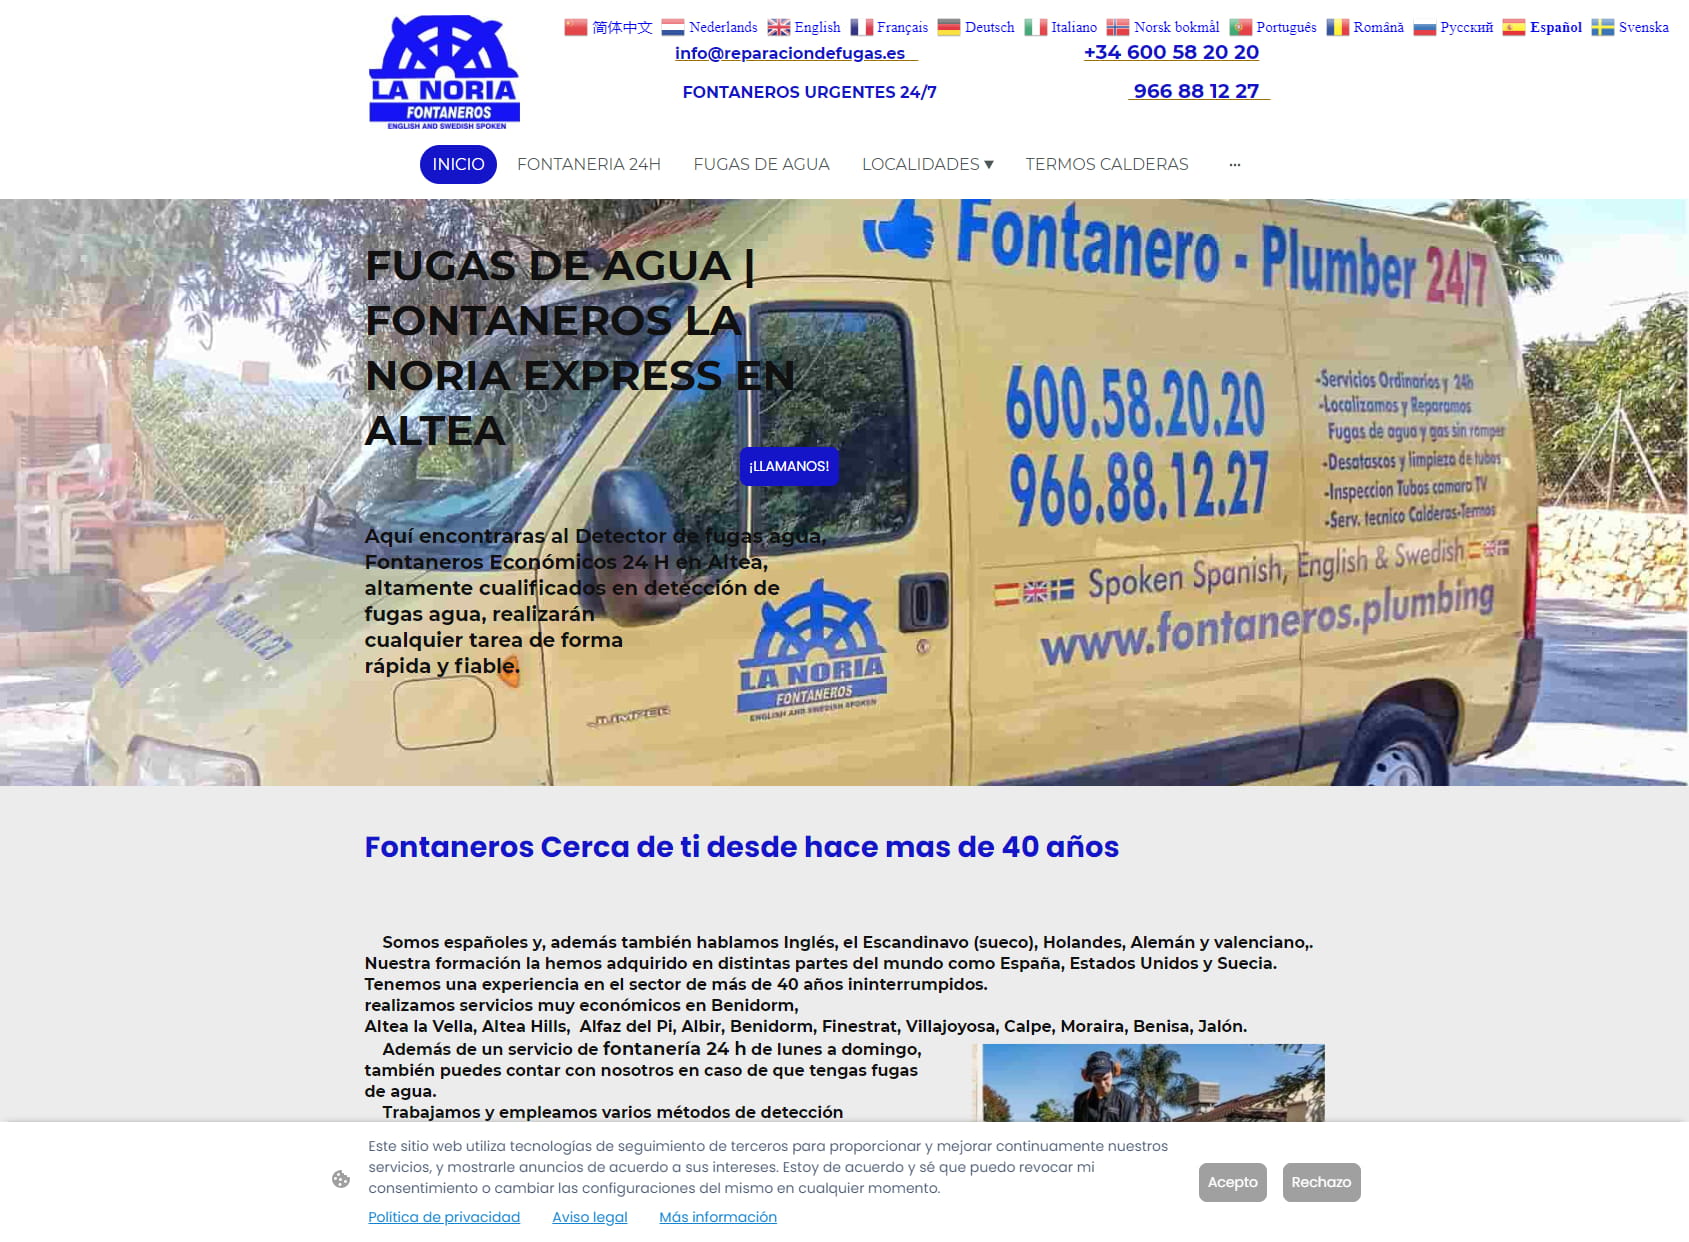 Fontaneros La Noria Express